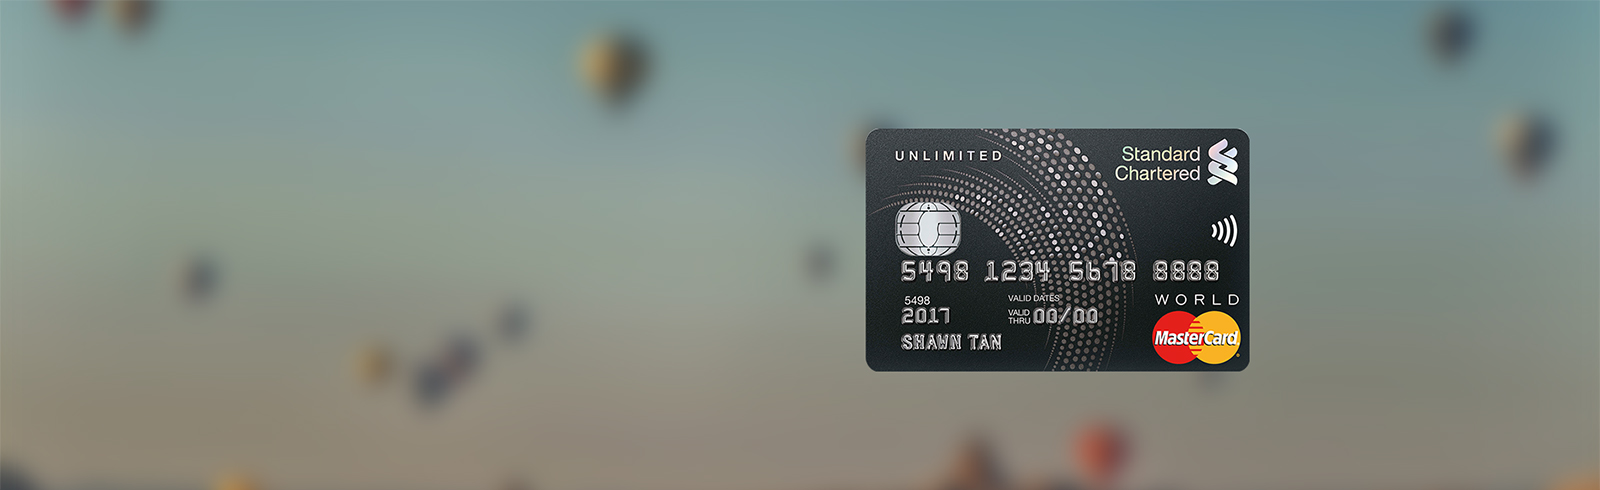 Unlimited Cashback Credit Card